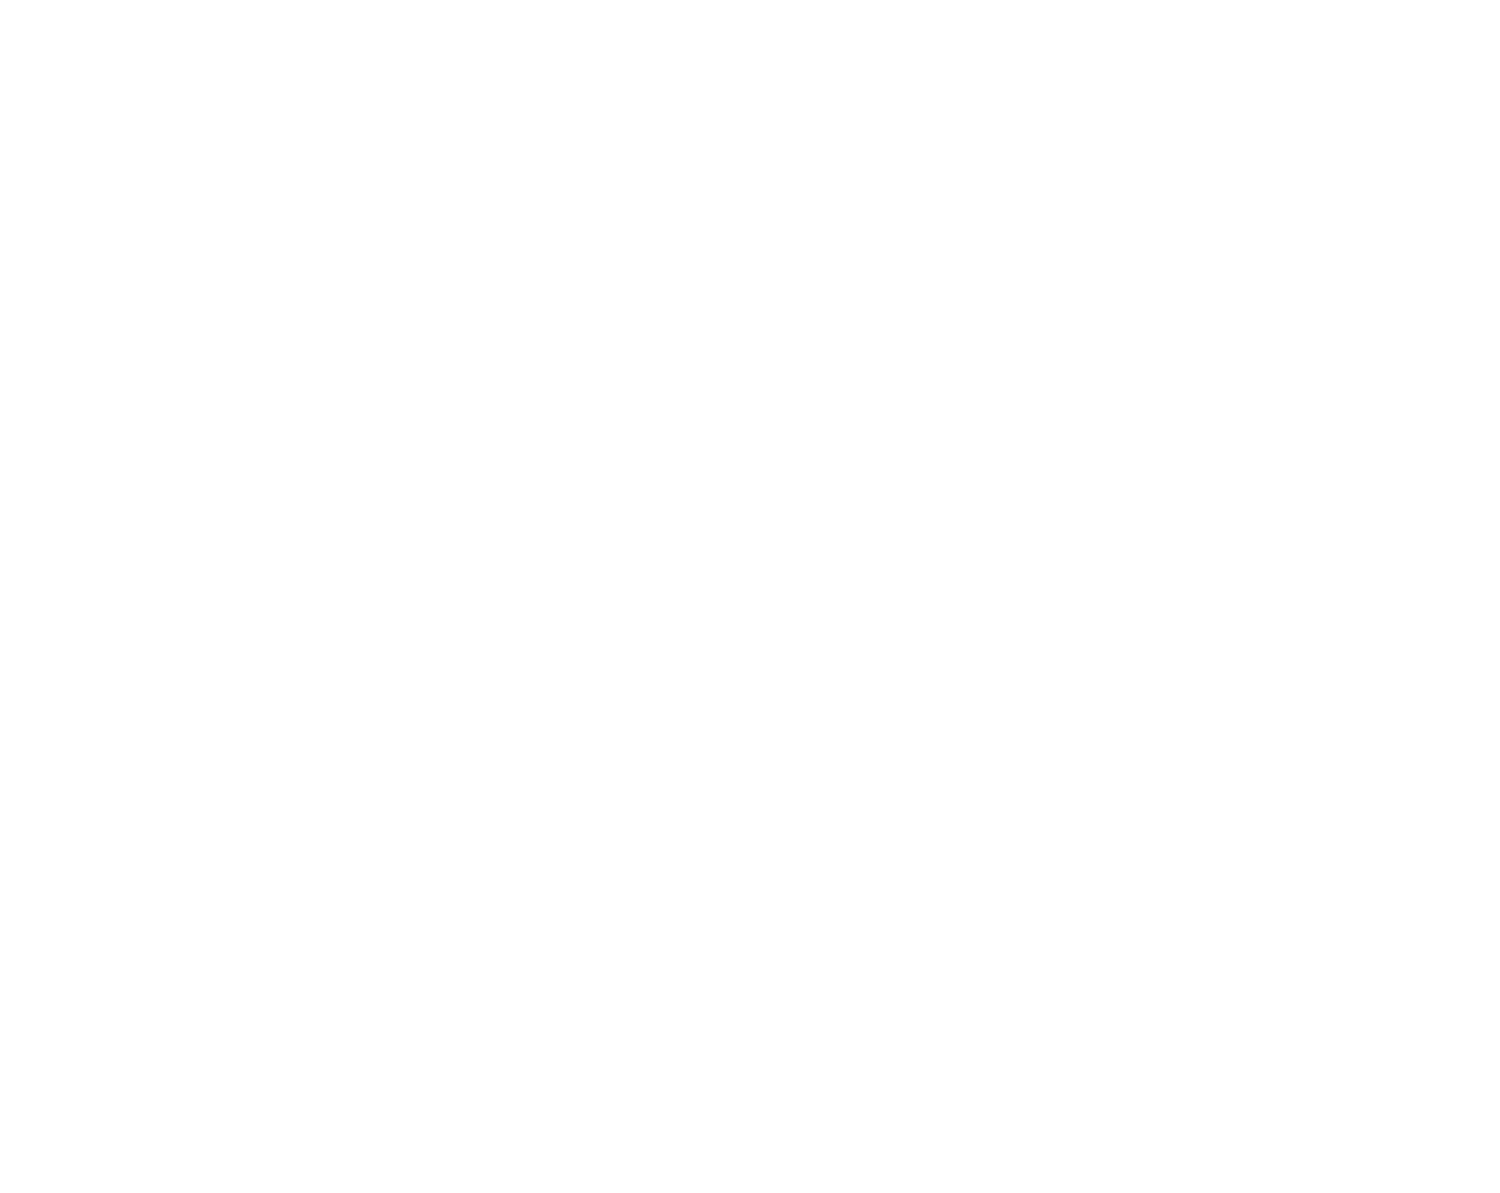 Rockway District